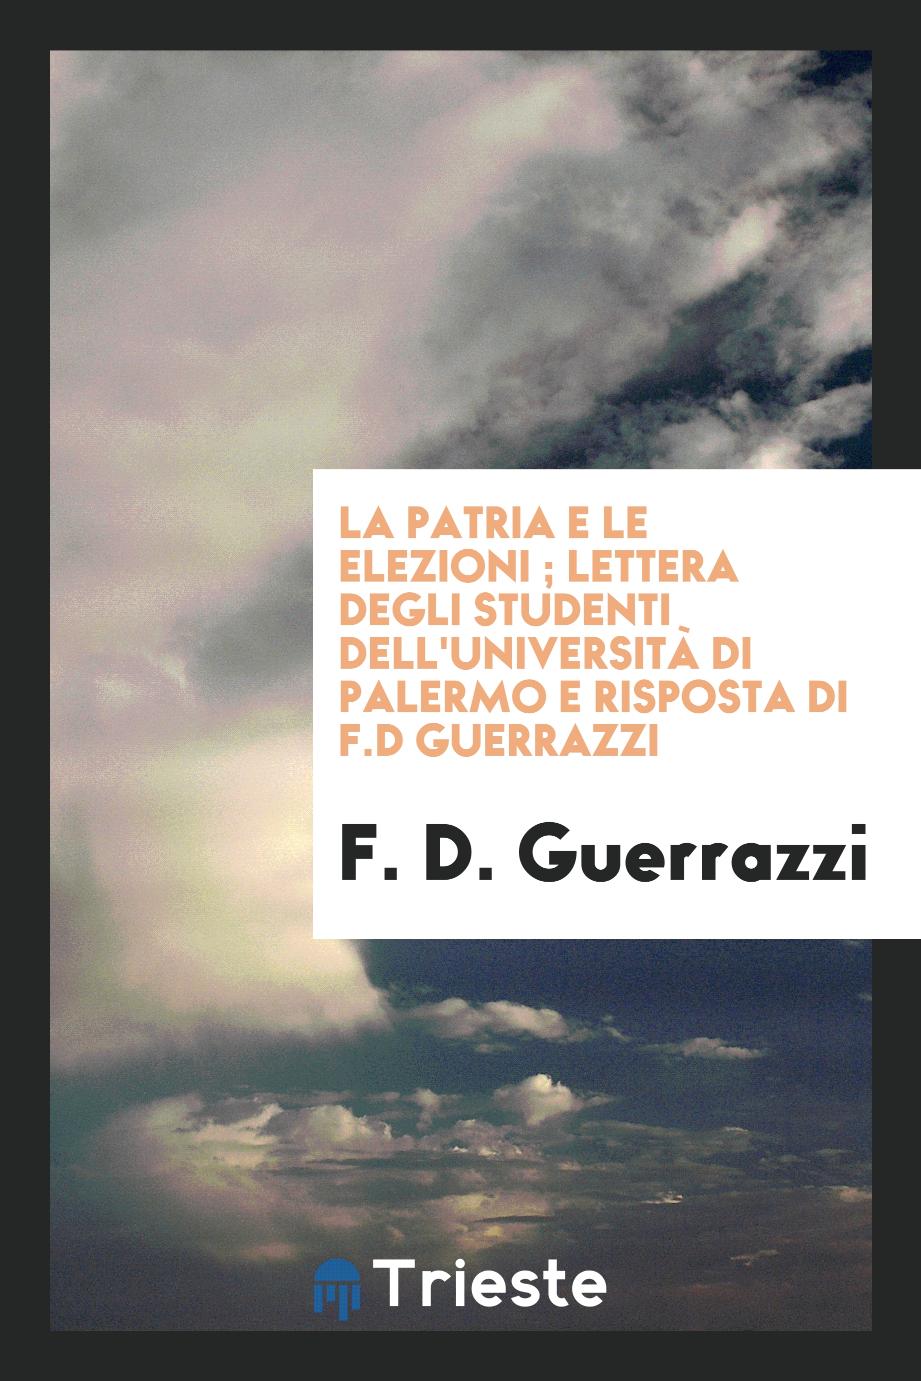 La patria e le elezioni ; Lettera degli studenti dell'Università di Palermo e risposta di F.D Guerrazzi